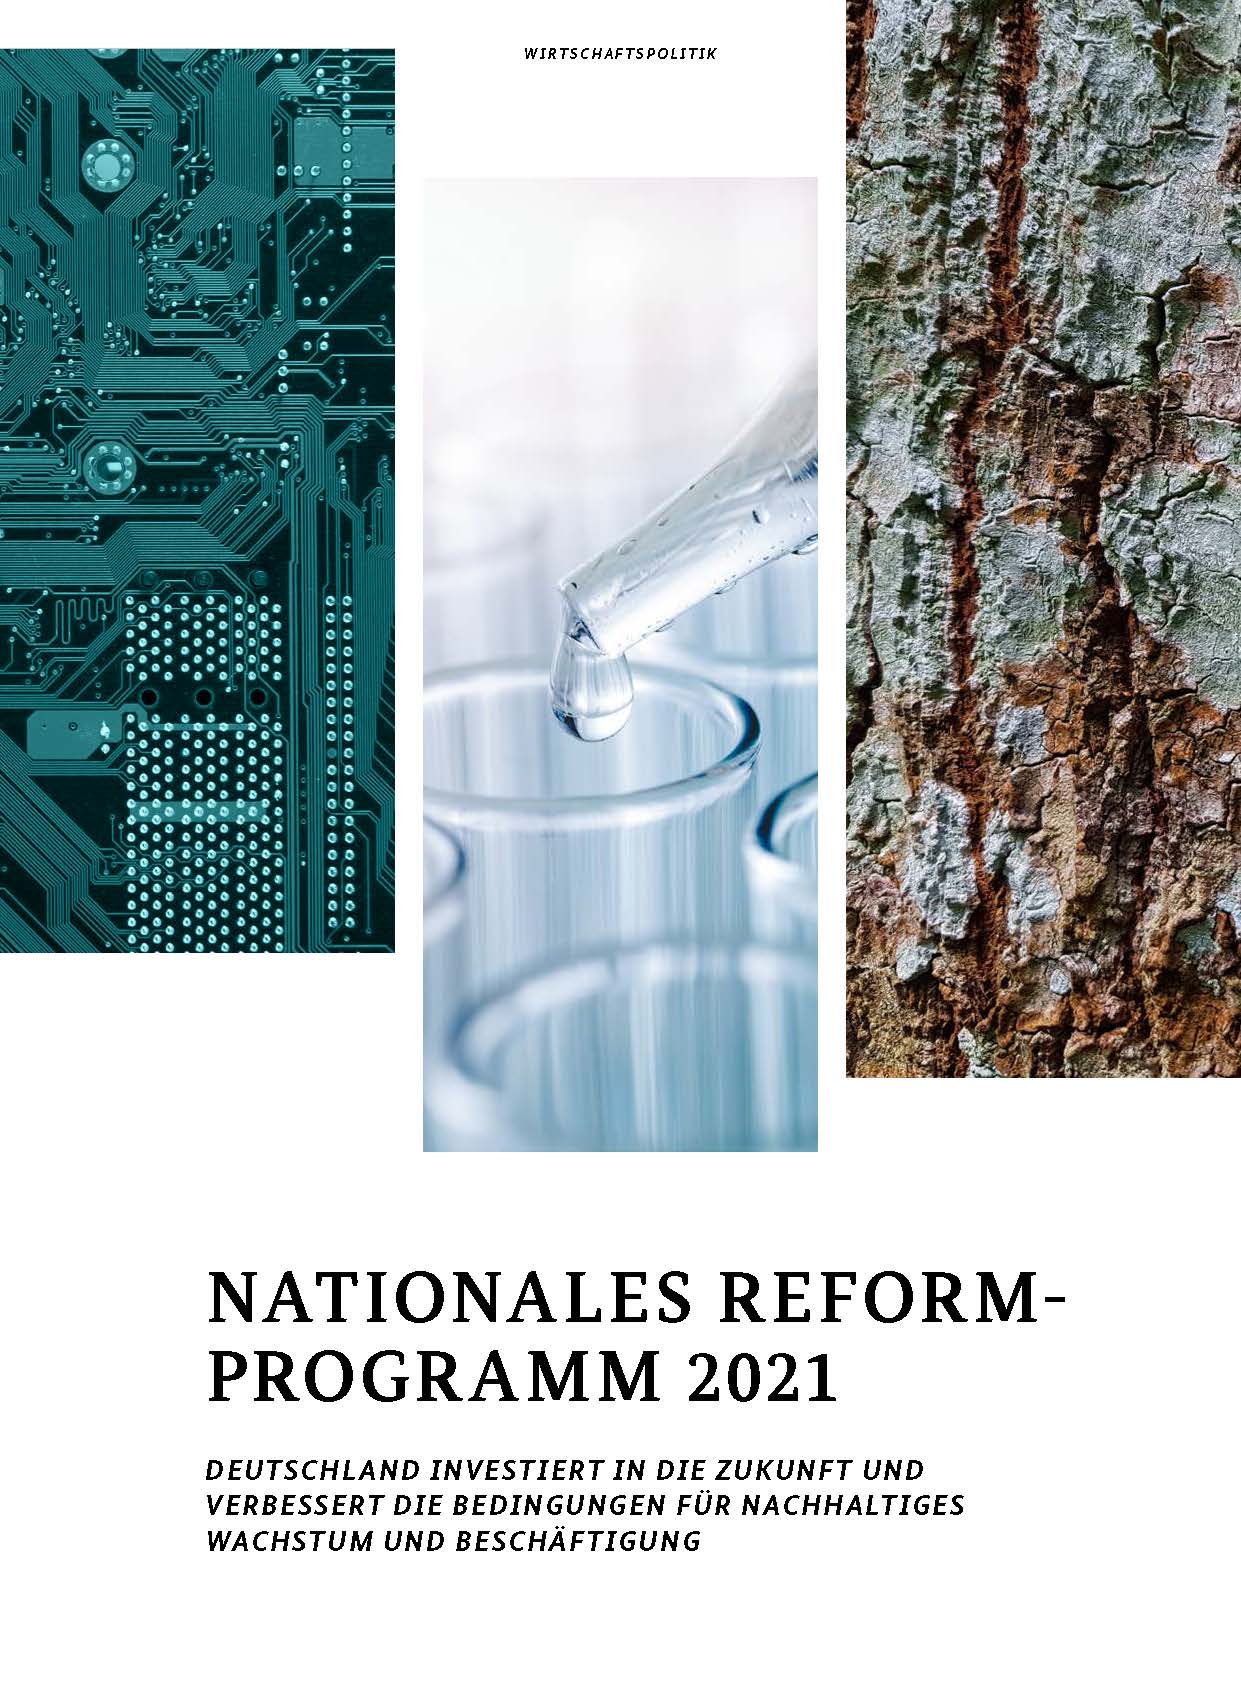 Reformprogramm 2021 - Schlaglichter der Wirtschaftspolitik (Monatsbericht 05/2021)